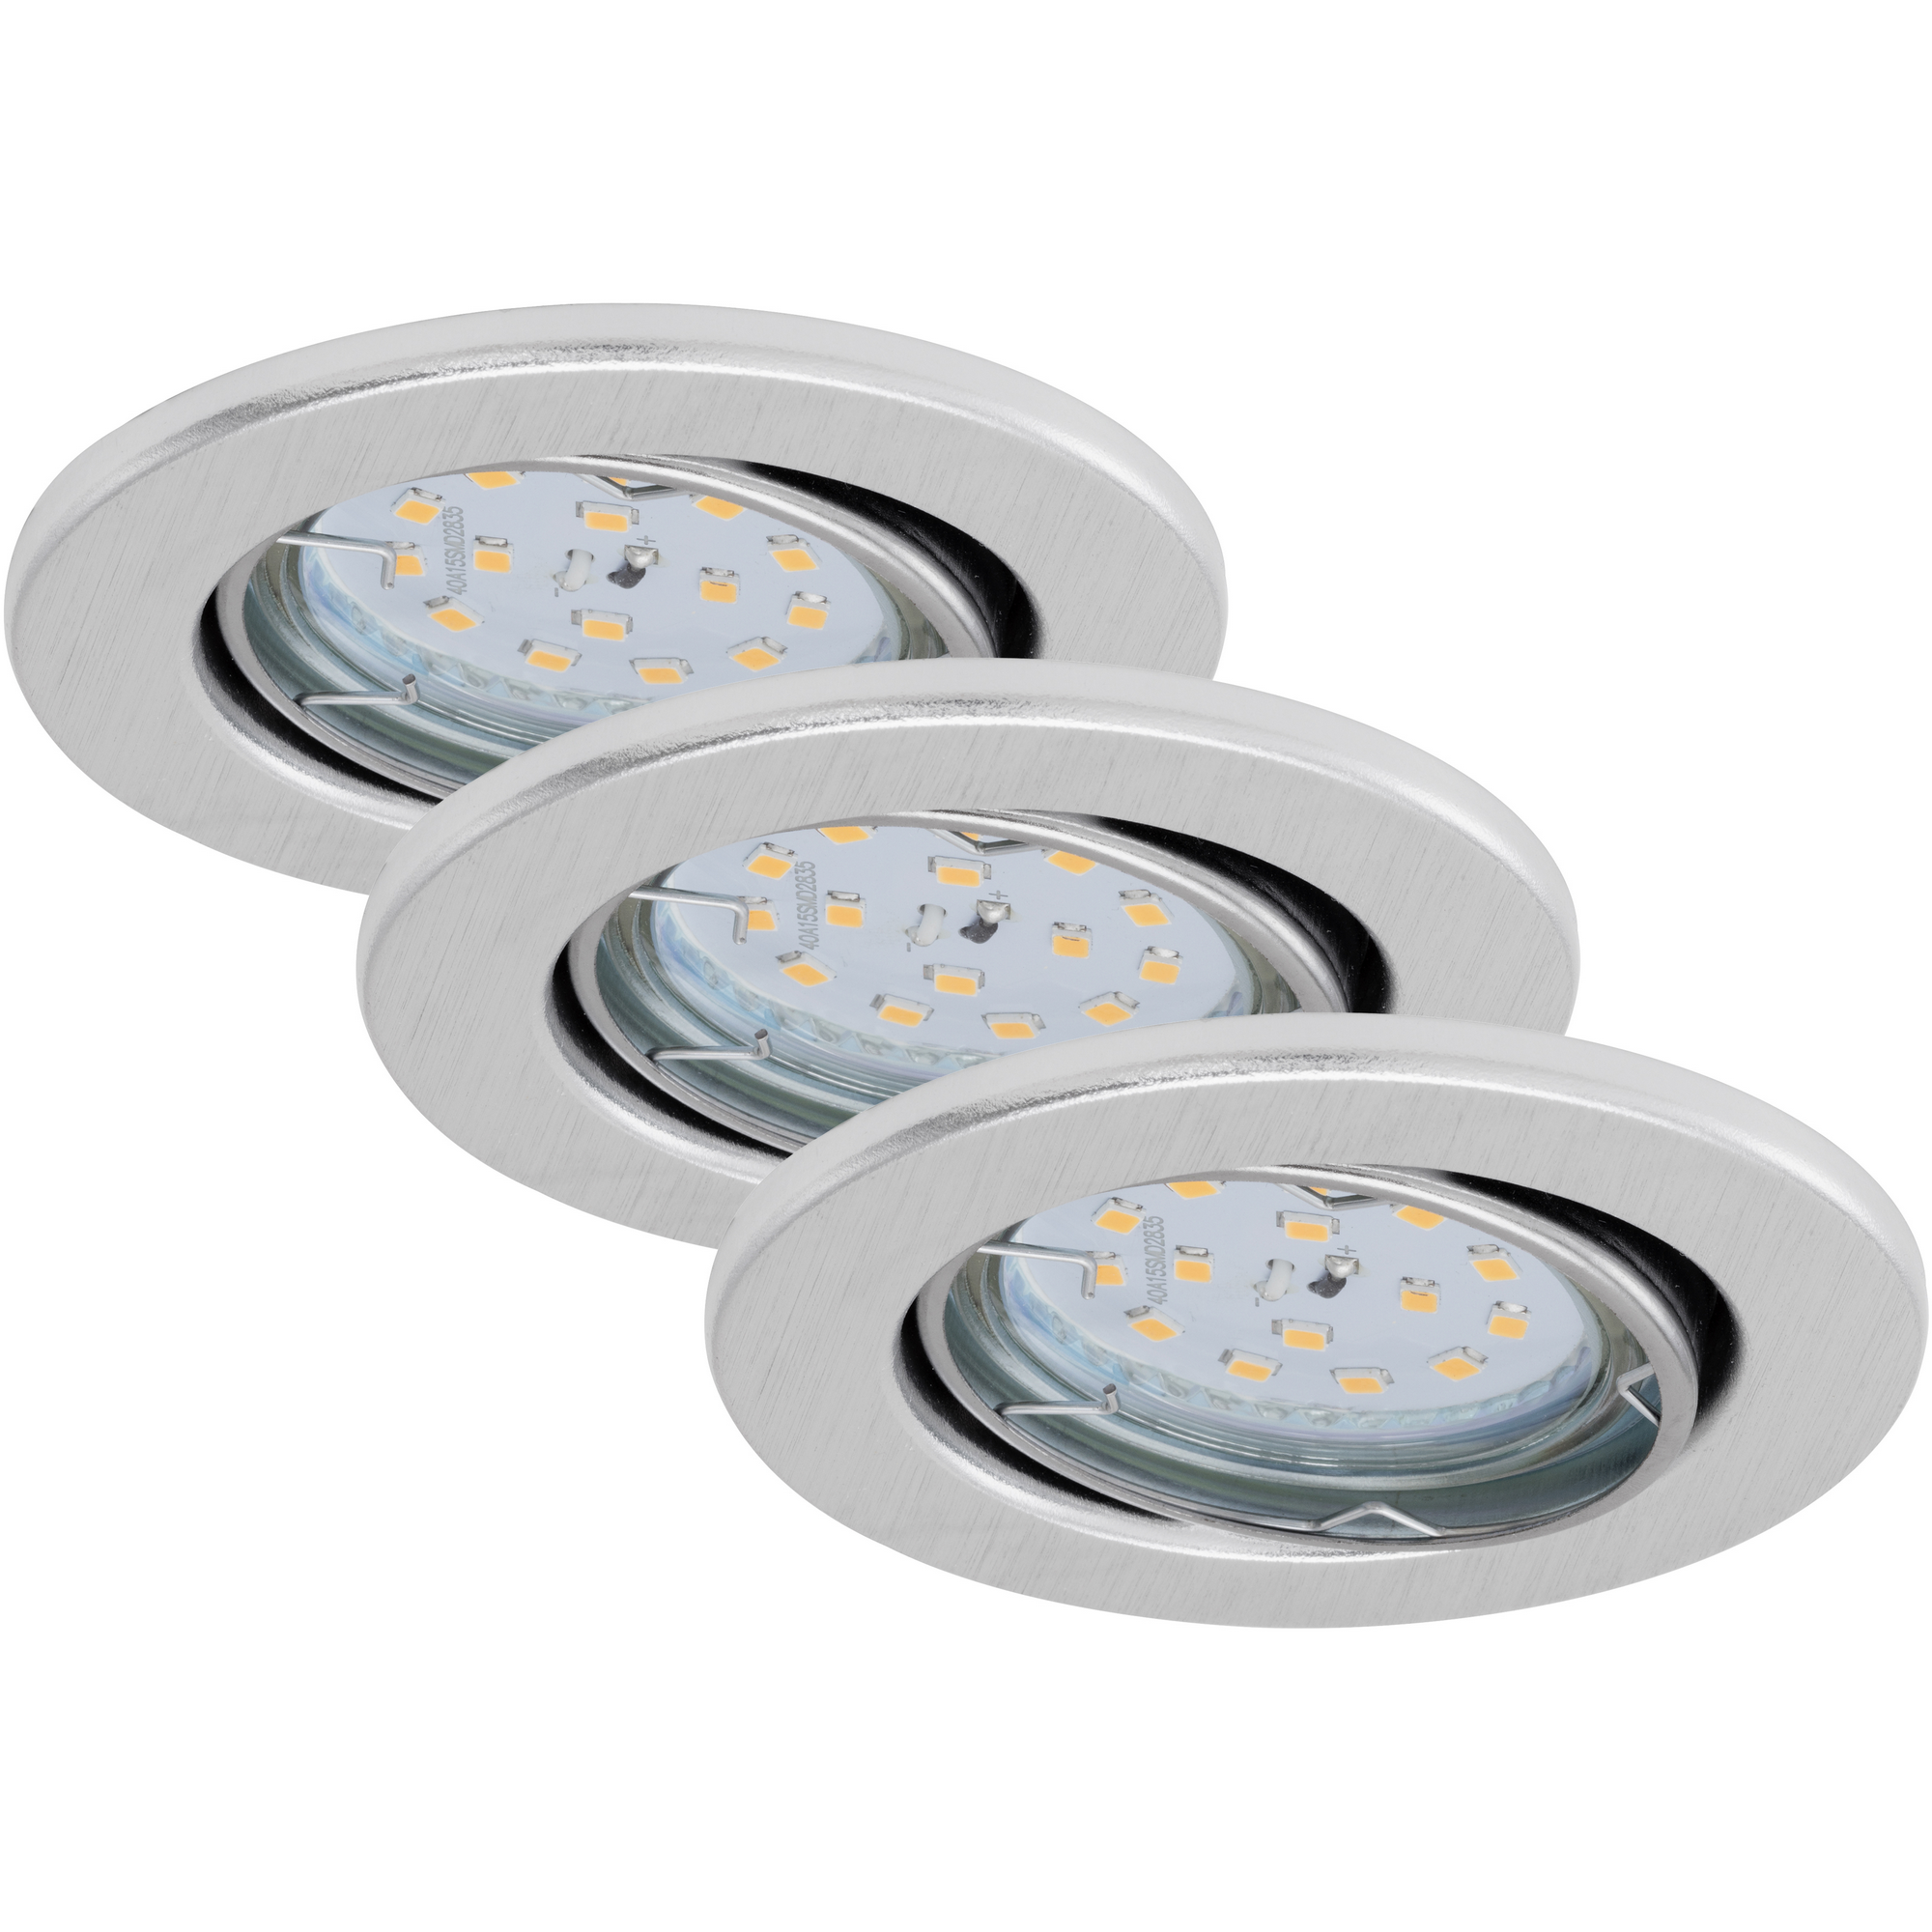 LED-Einbauleuchte 'Fit Dim' aluminiumfarben 400 lm, 3er-Set + product picture